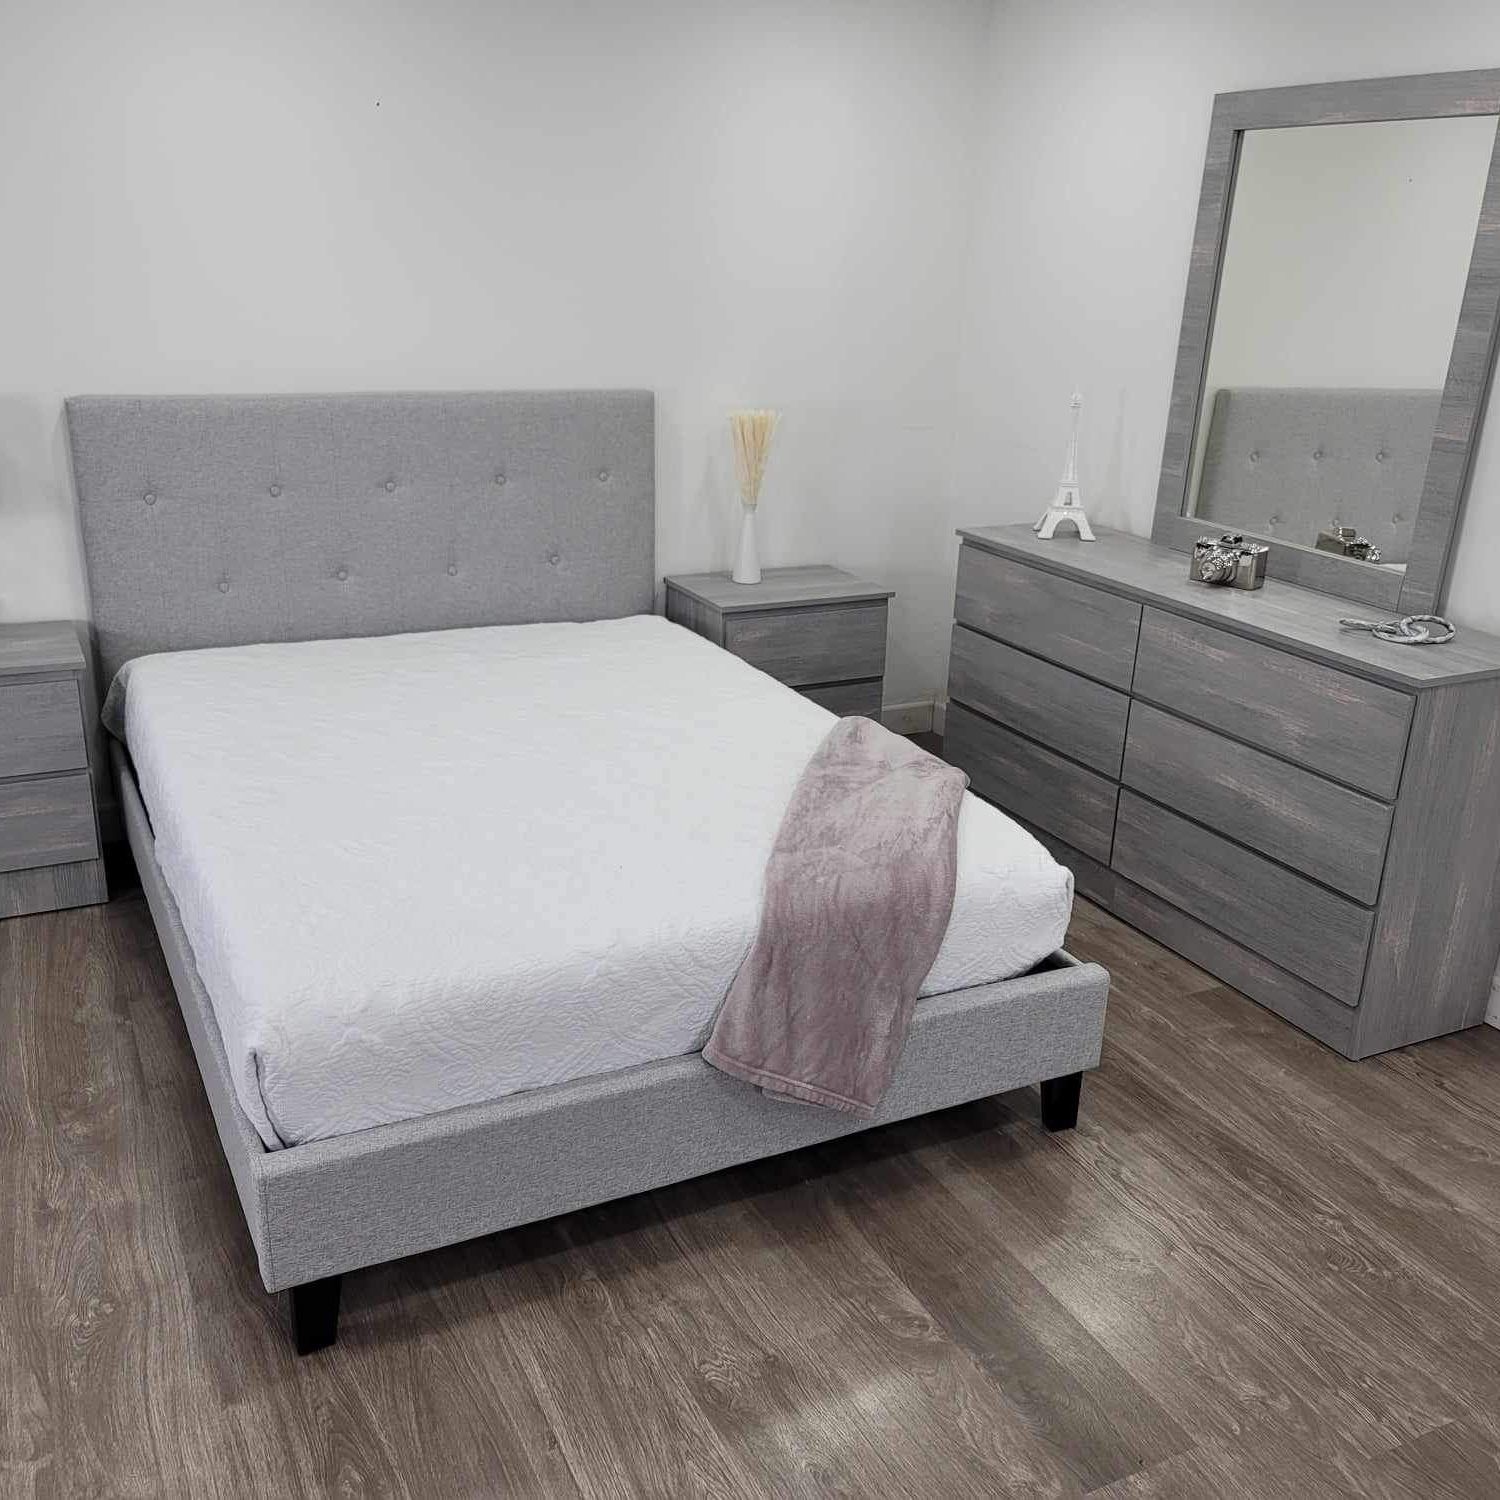 Brand New Bedroom Set with Mattress / Juego de Cuarto con Colchón Nuevo a Estrenar … Delivery 🚚 